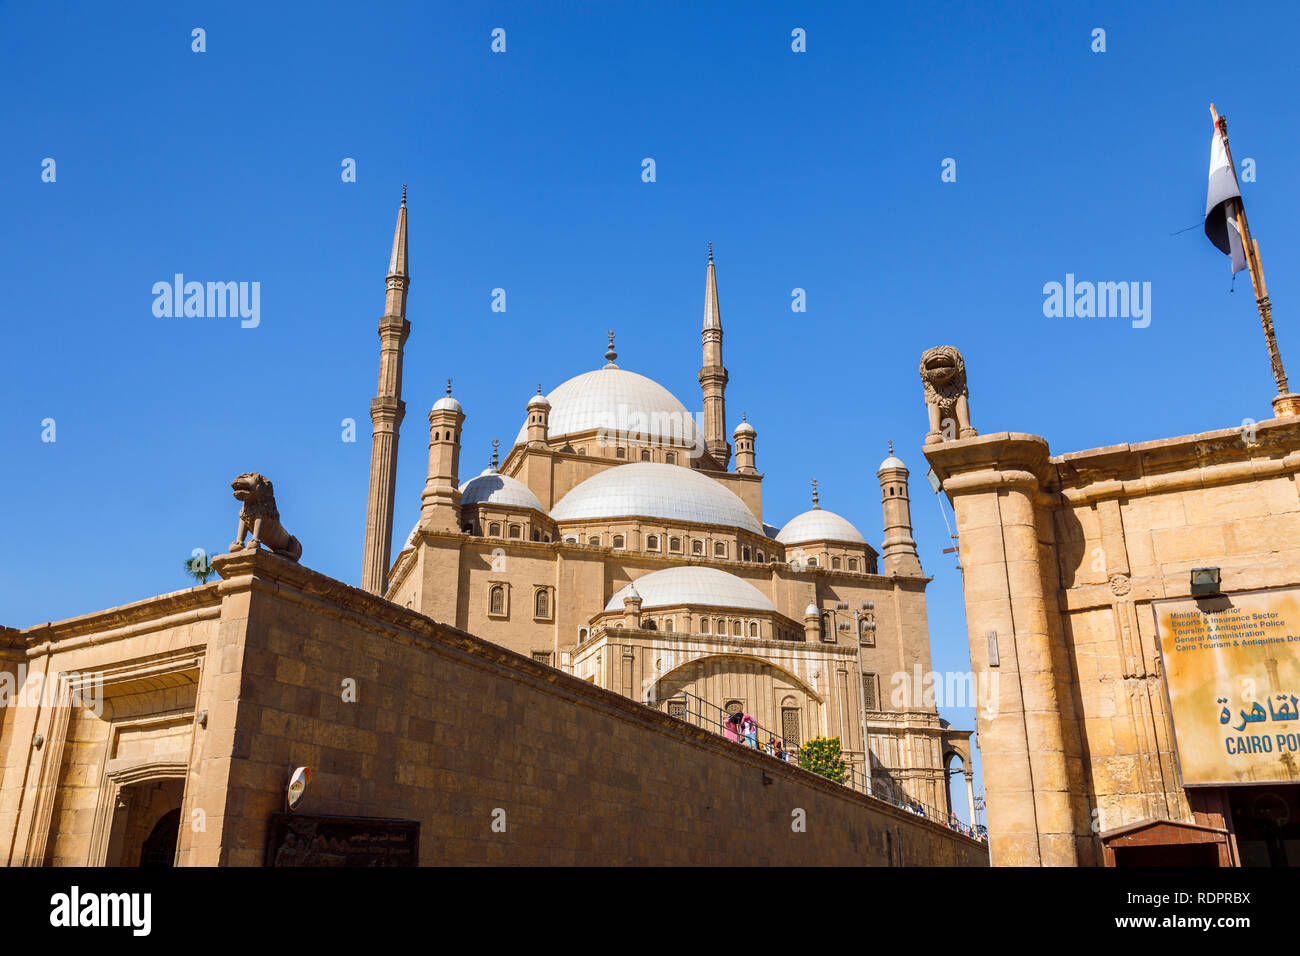 Blick auf den Kuppeln und Minaretten der Große Moschee von Muhammad Ali Pascha in der Zitadelle von Saladin, einem mittelalterlichen islamischen Festung in Kairo, Ägypten Stockfoto